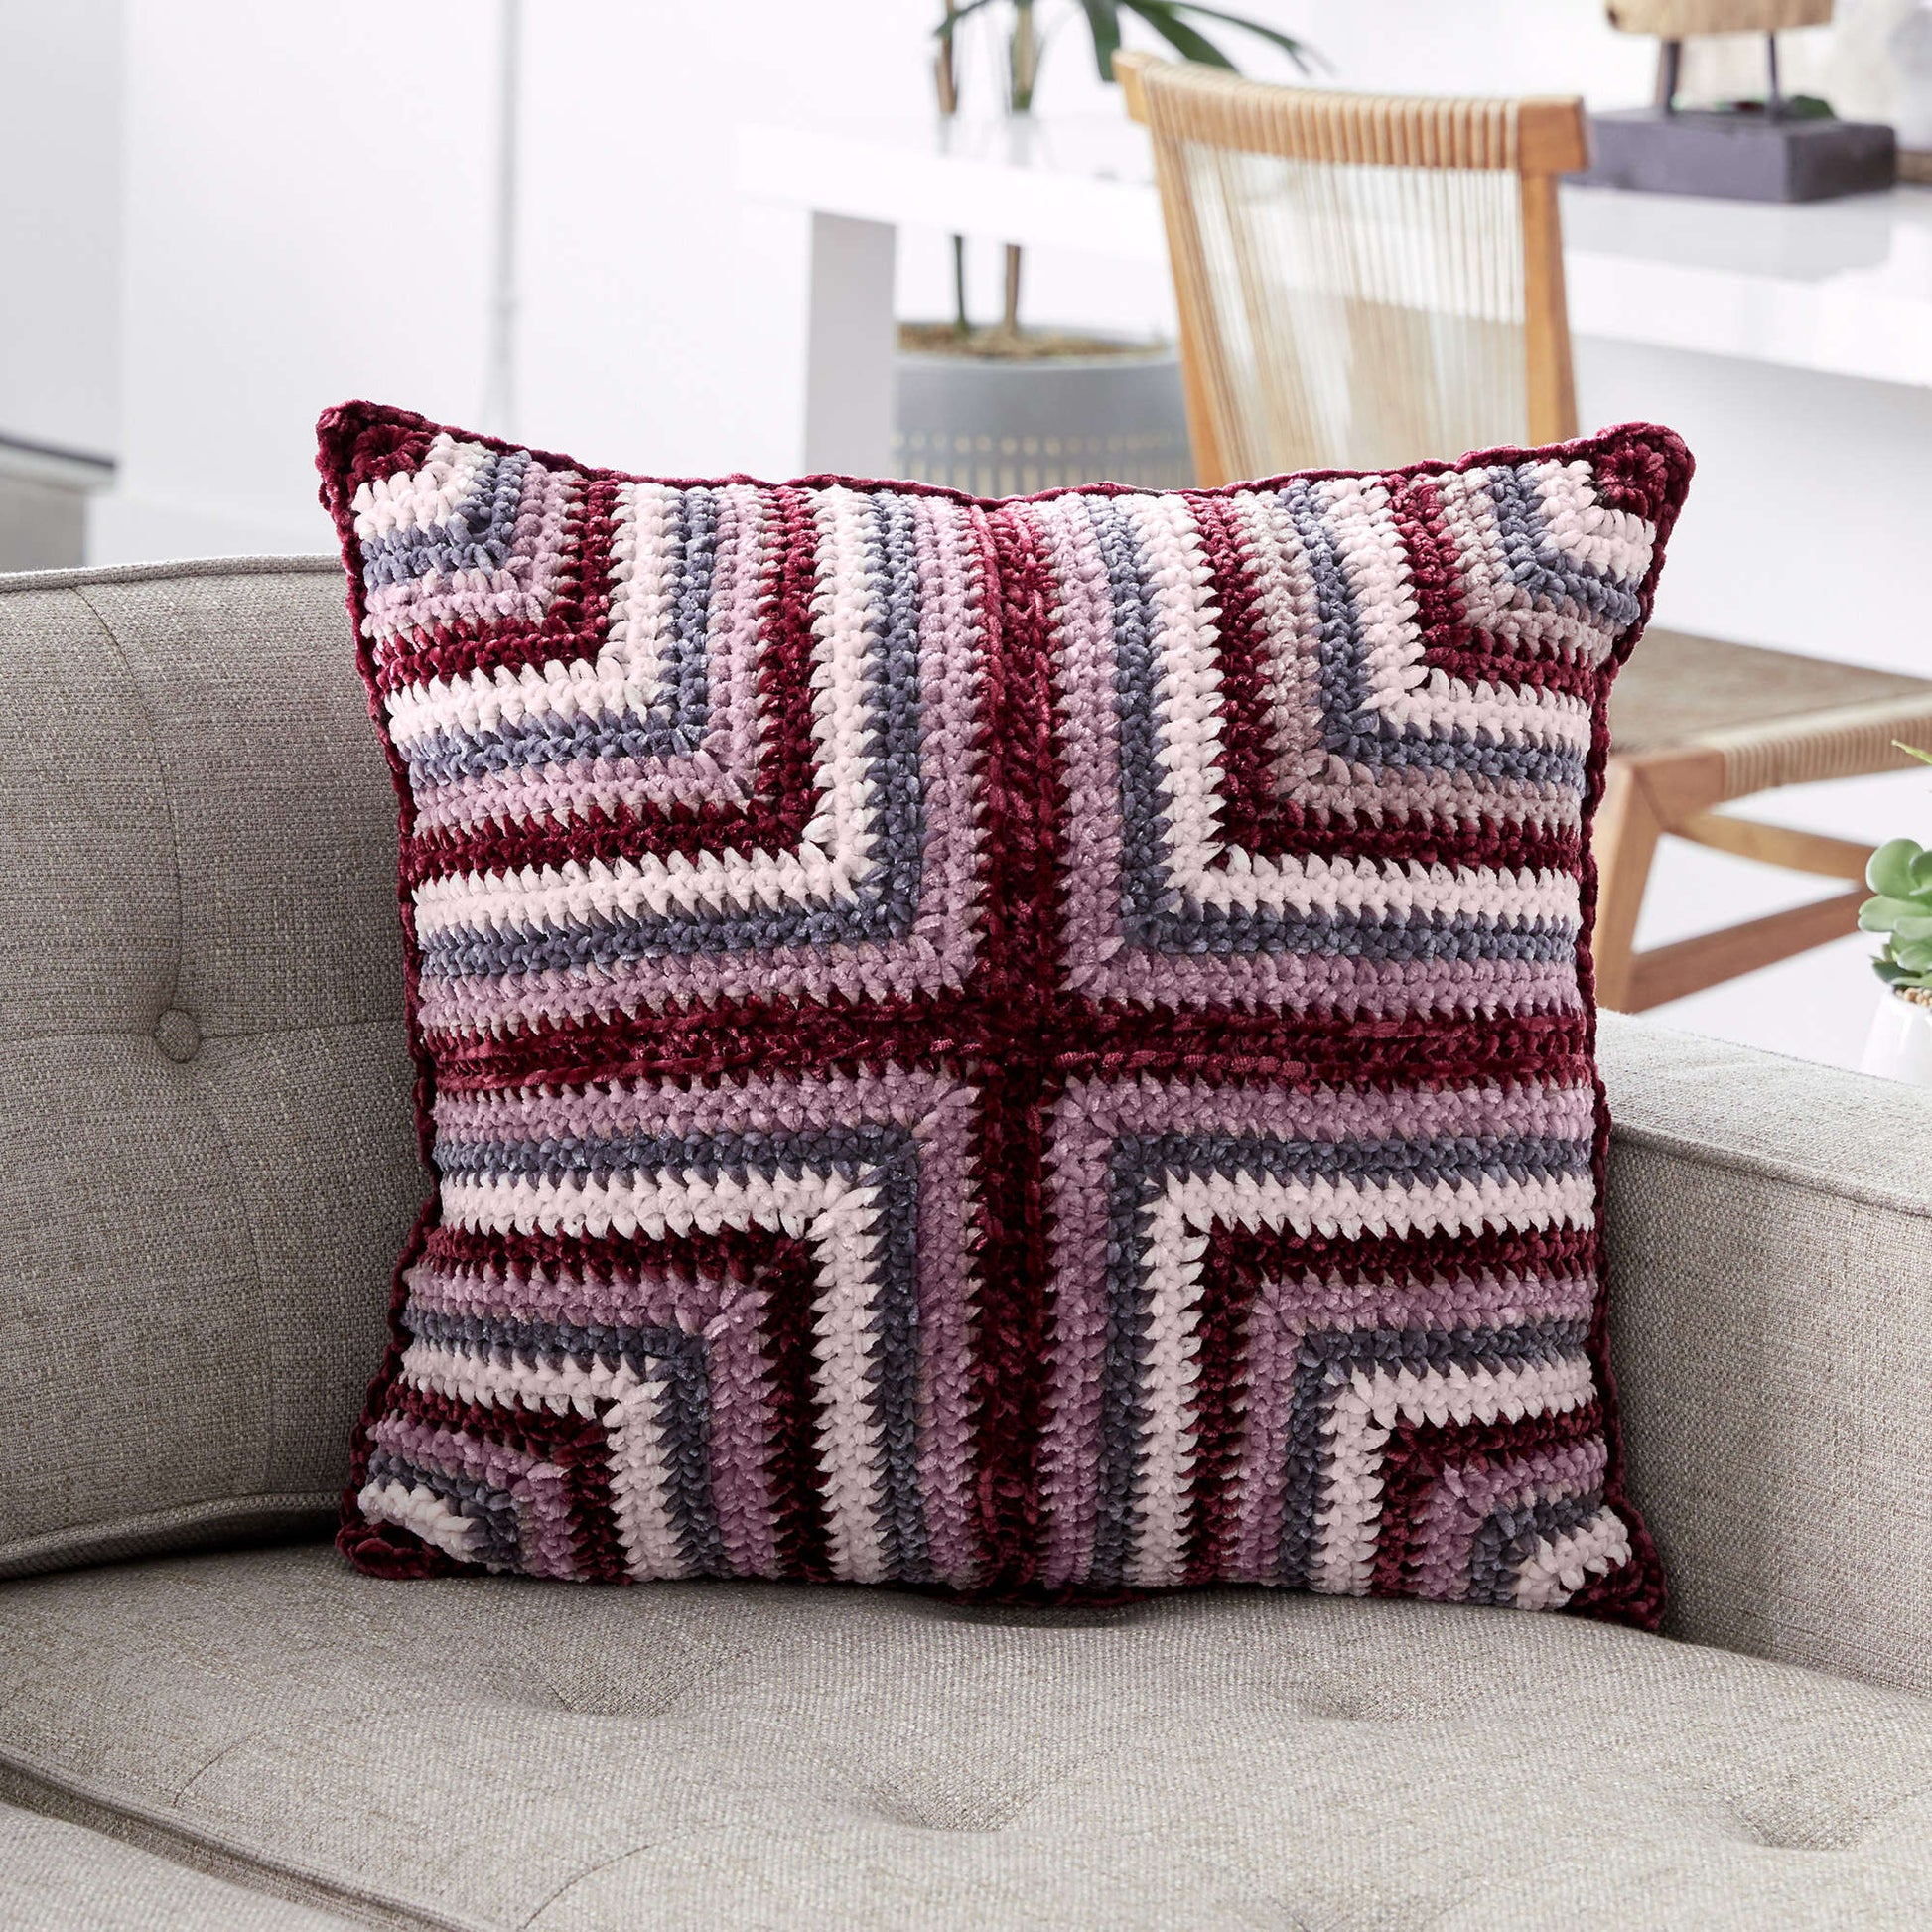 Bernat Mitered Squares Crochet Cushion Crochet Pillow made in Bernat Velvet yarn